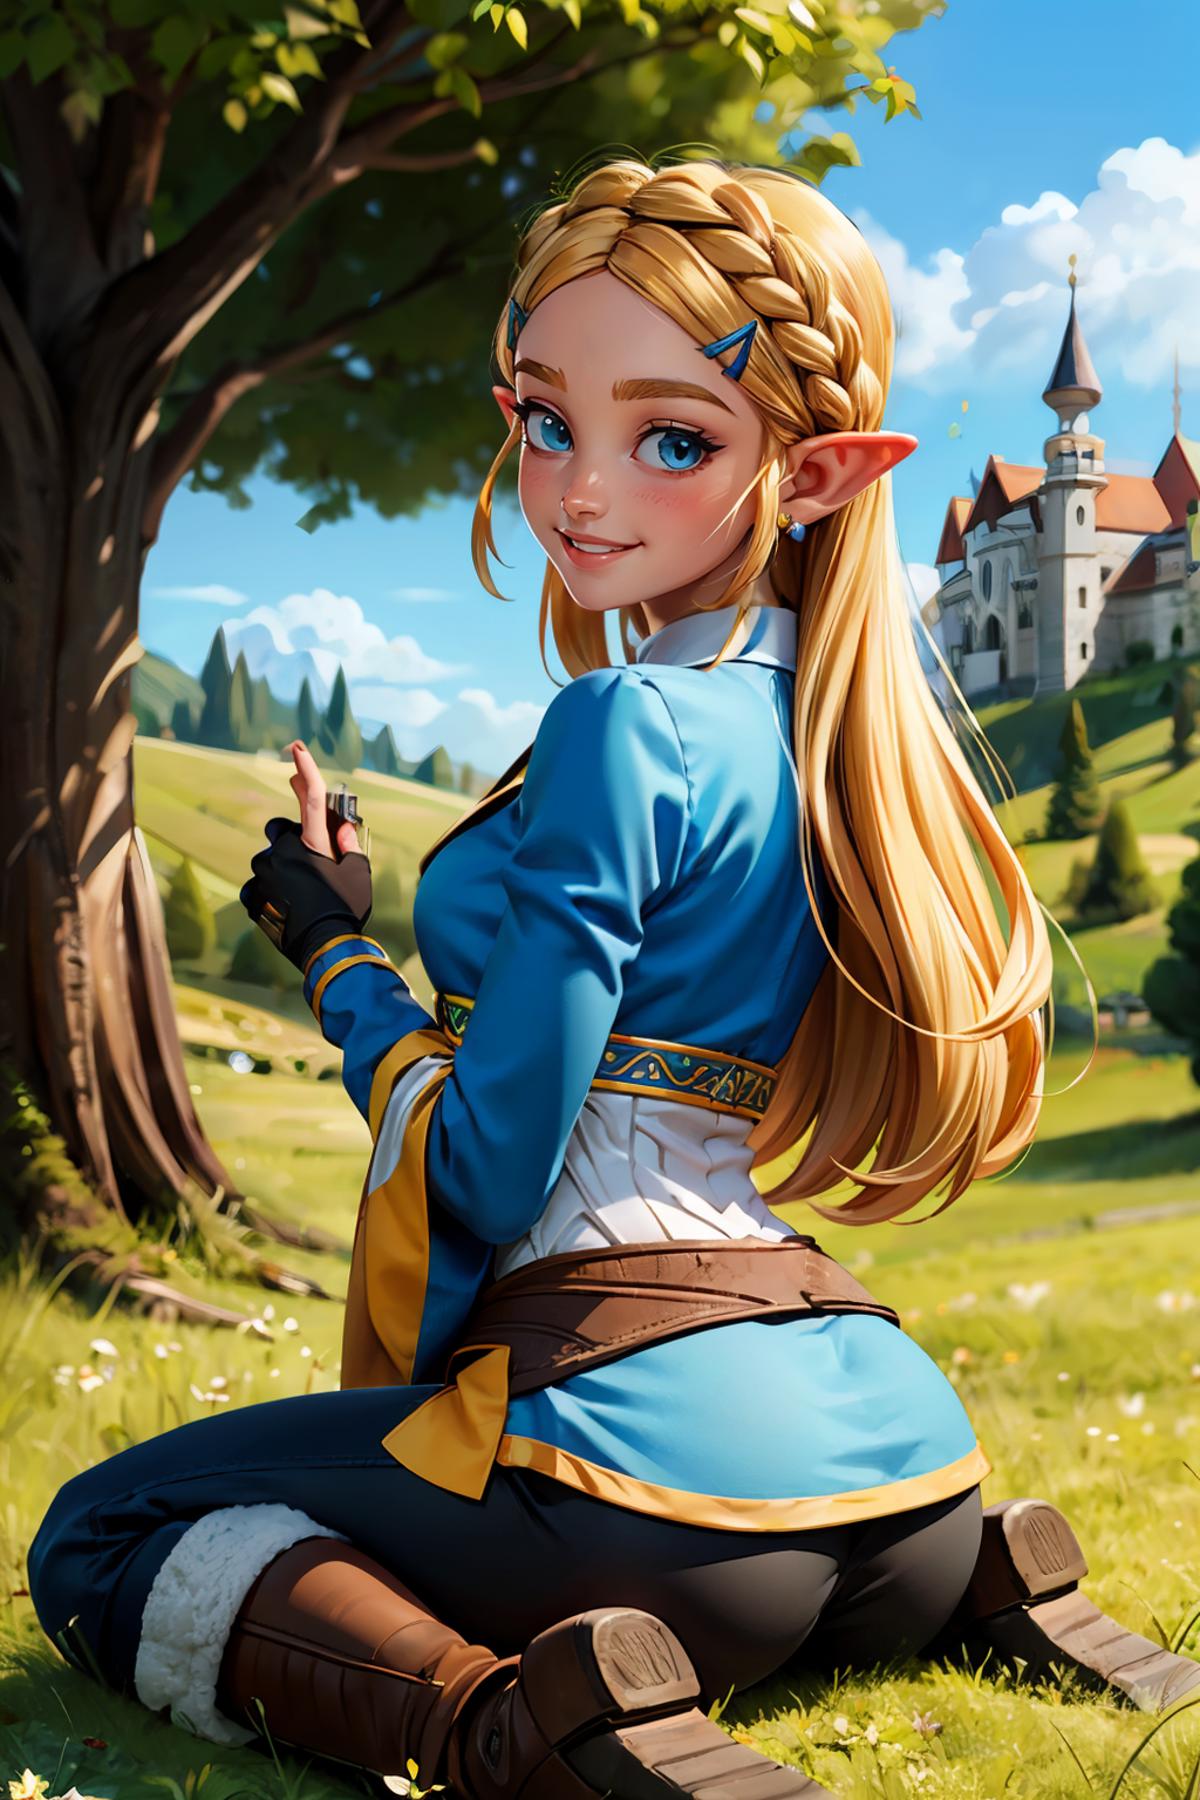 Zelda ゼルダ / The Legend of Zelda image by wikkitikki